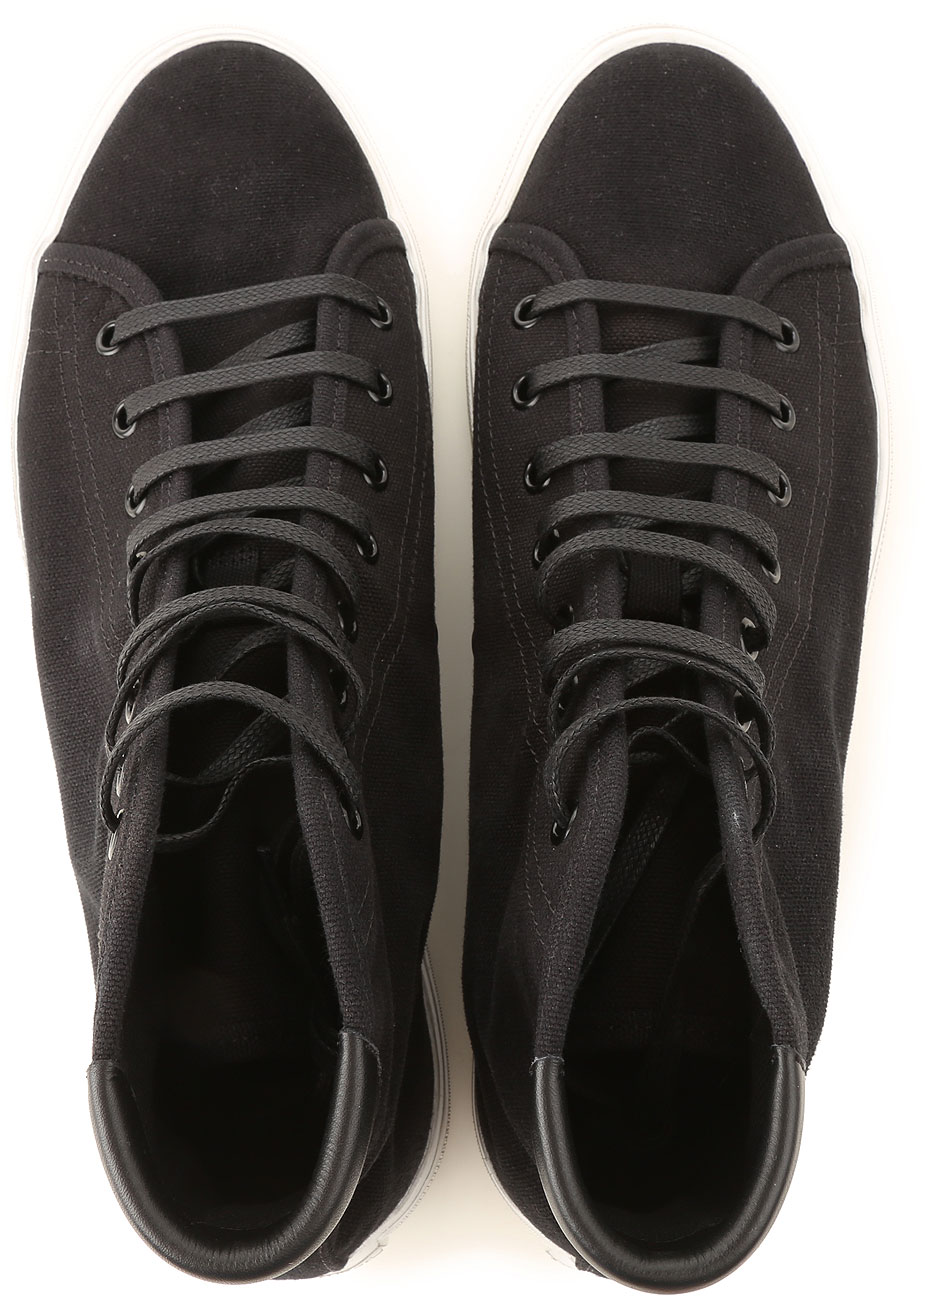 Mens Shoes Saint Laurent, Style code: 606075-guz20-1000